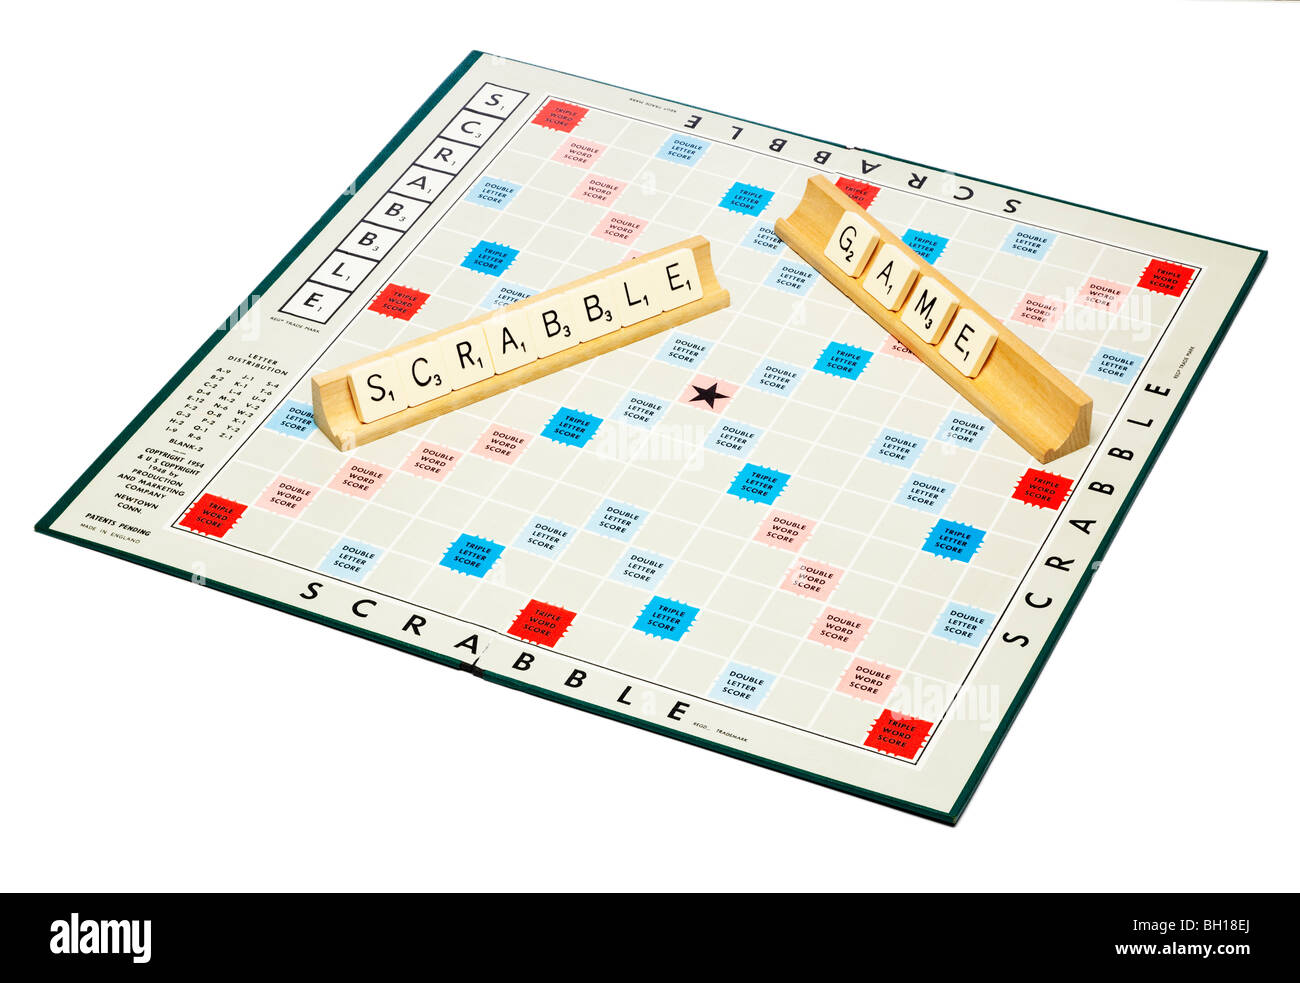 Jeu de société Scrabble scrabble avec énoncés Banque D'Images